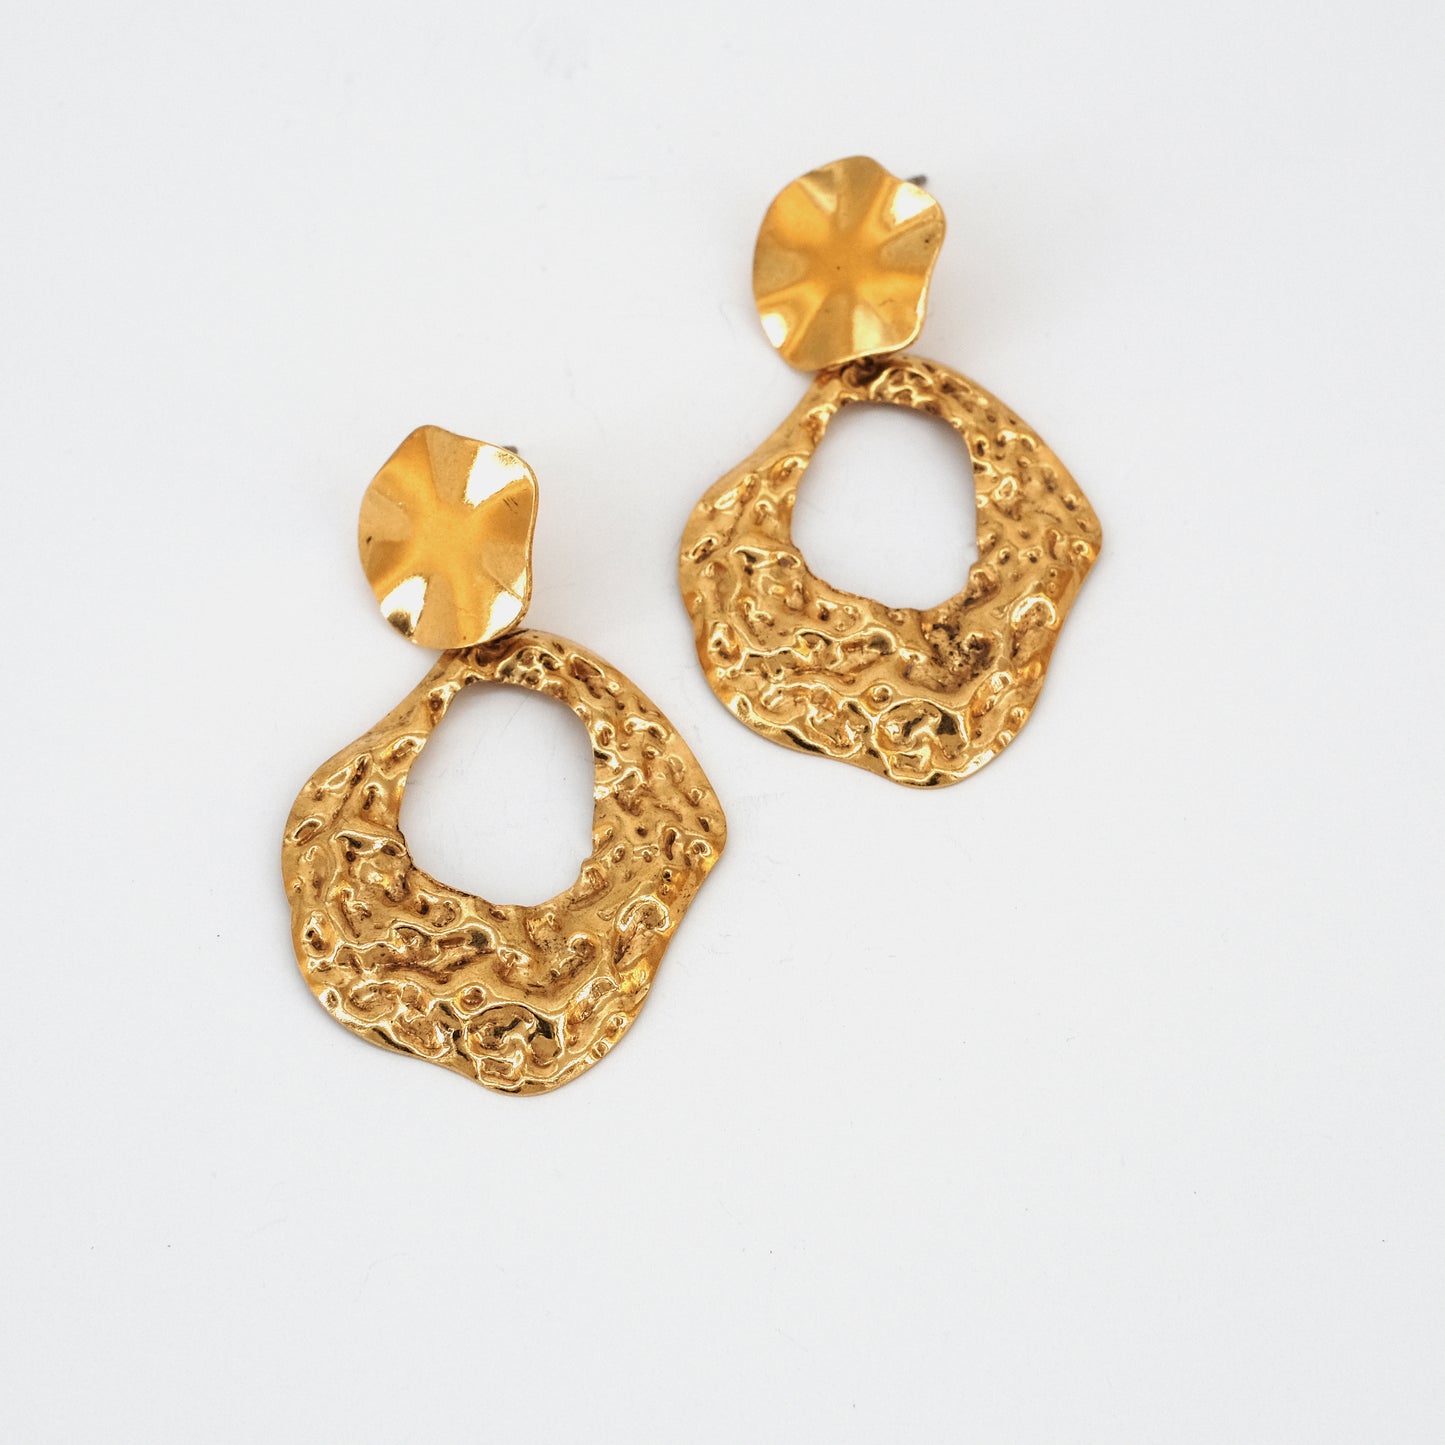 Xiu earrings